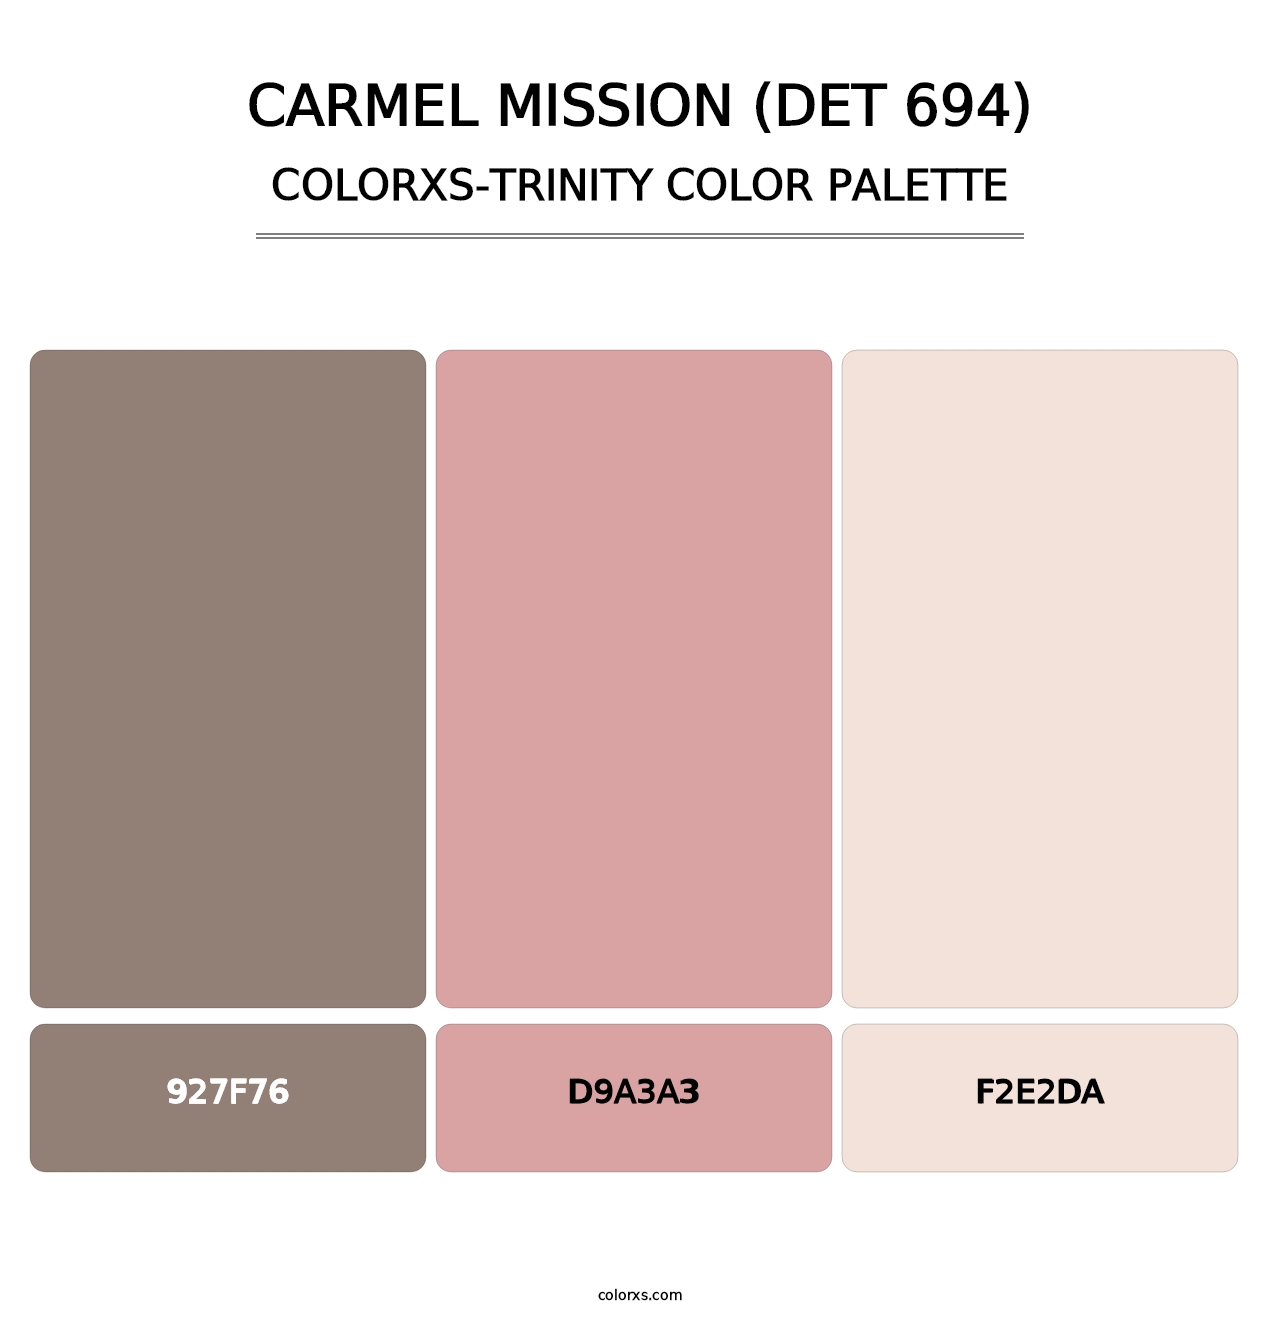 Carmel Mission (DET 694) - Colorxs Trinity Palette